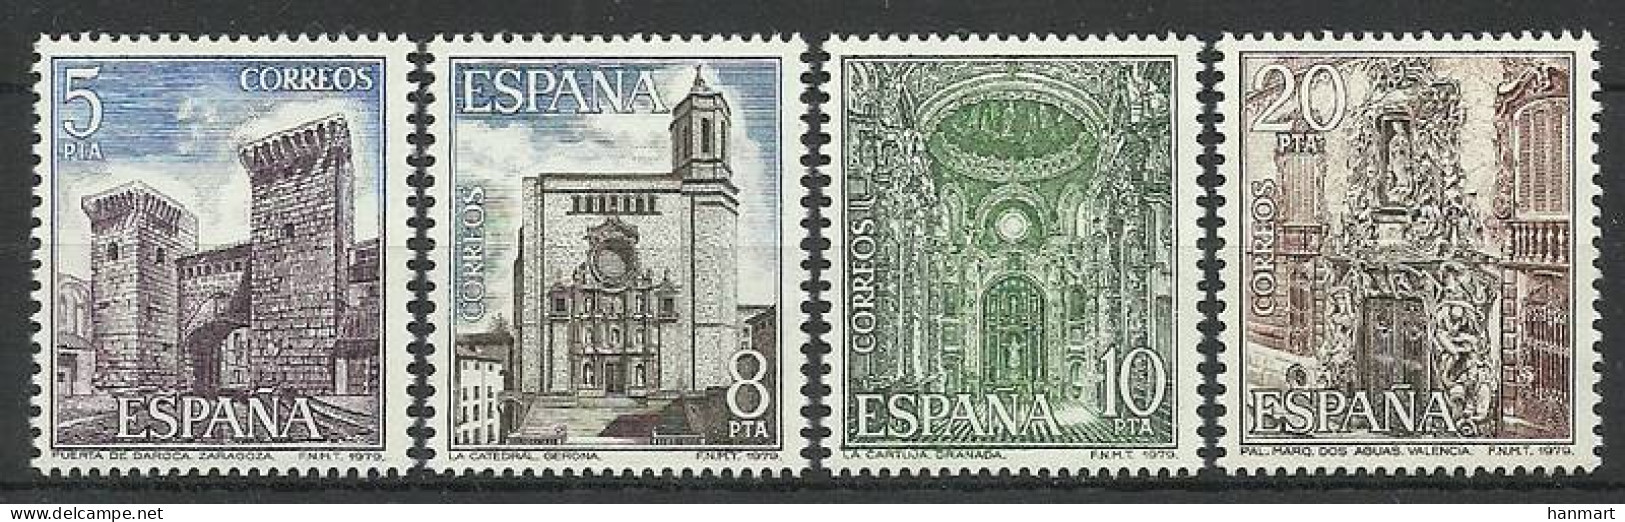 Spain 1979 Mi 2419-2422 MNH  (ZE1 SPN2419-2422) - Skulpturen